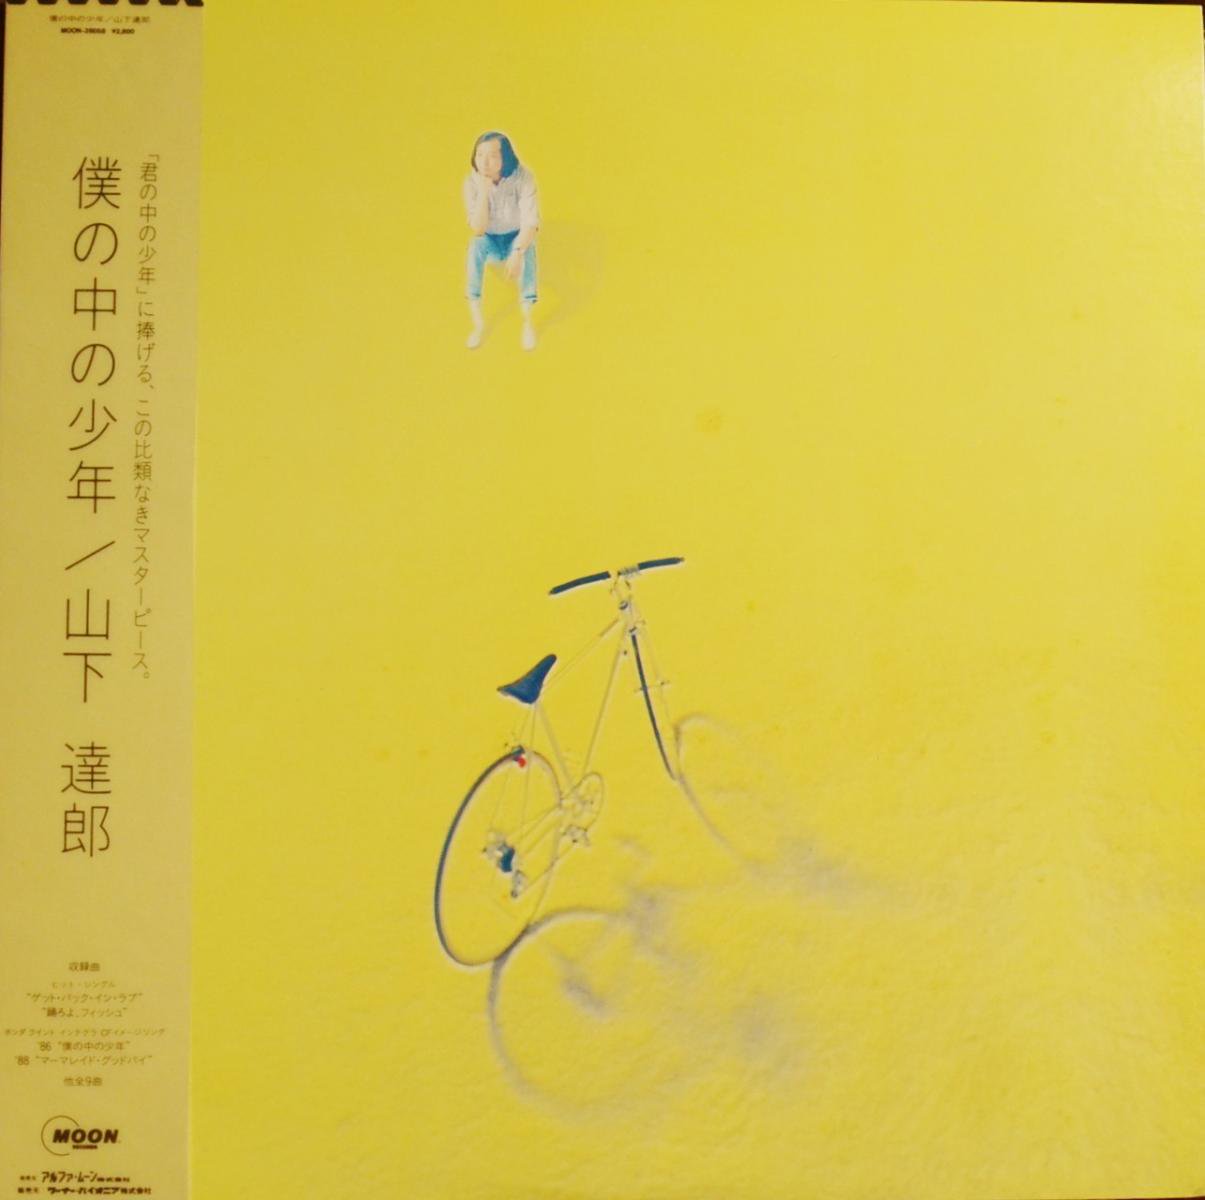 山下達郎 TATSURO YAMASHITA / 僕の中の少年 (LP)